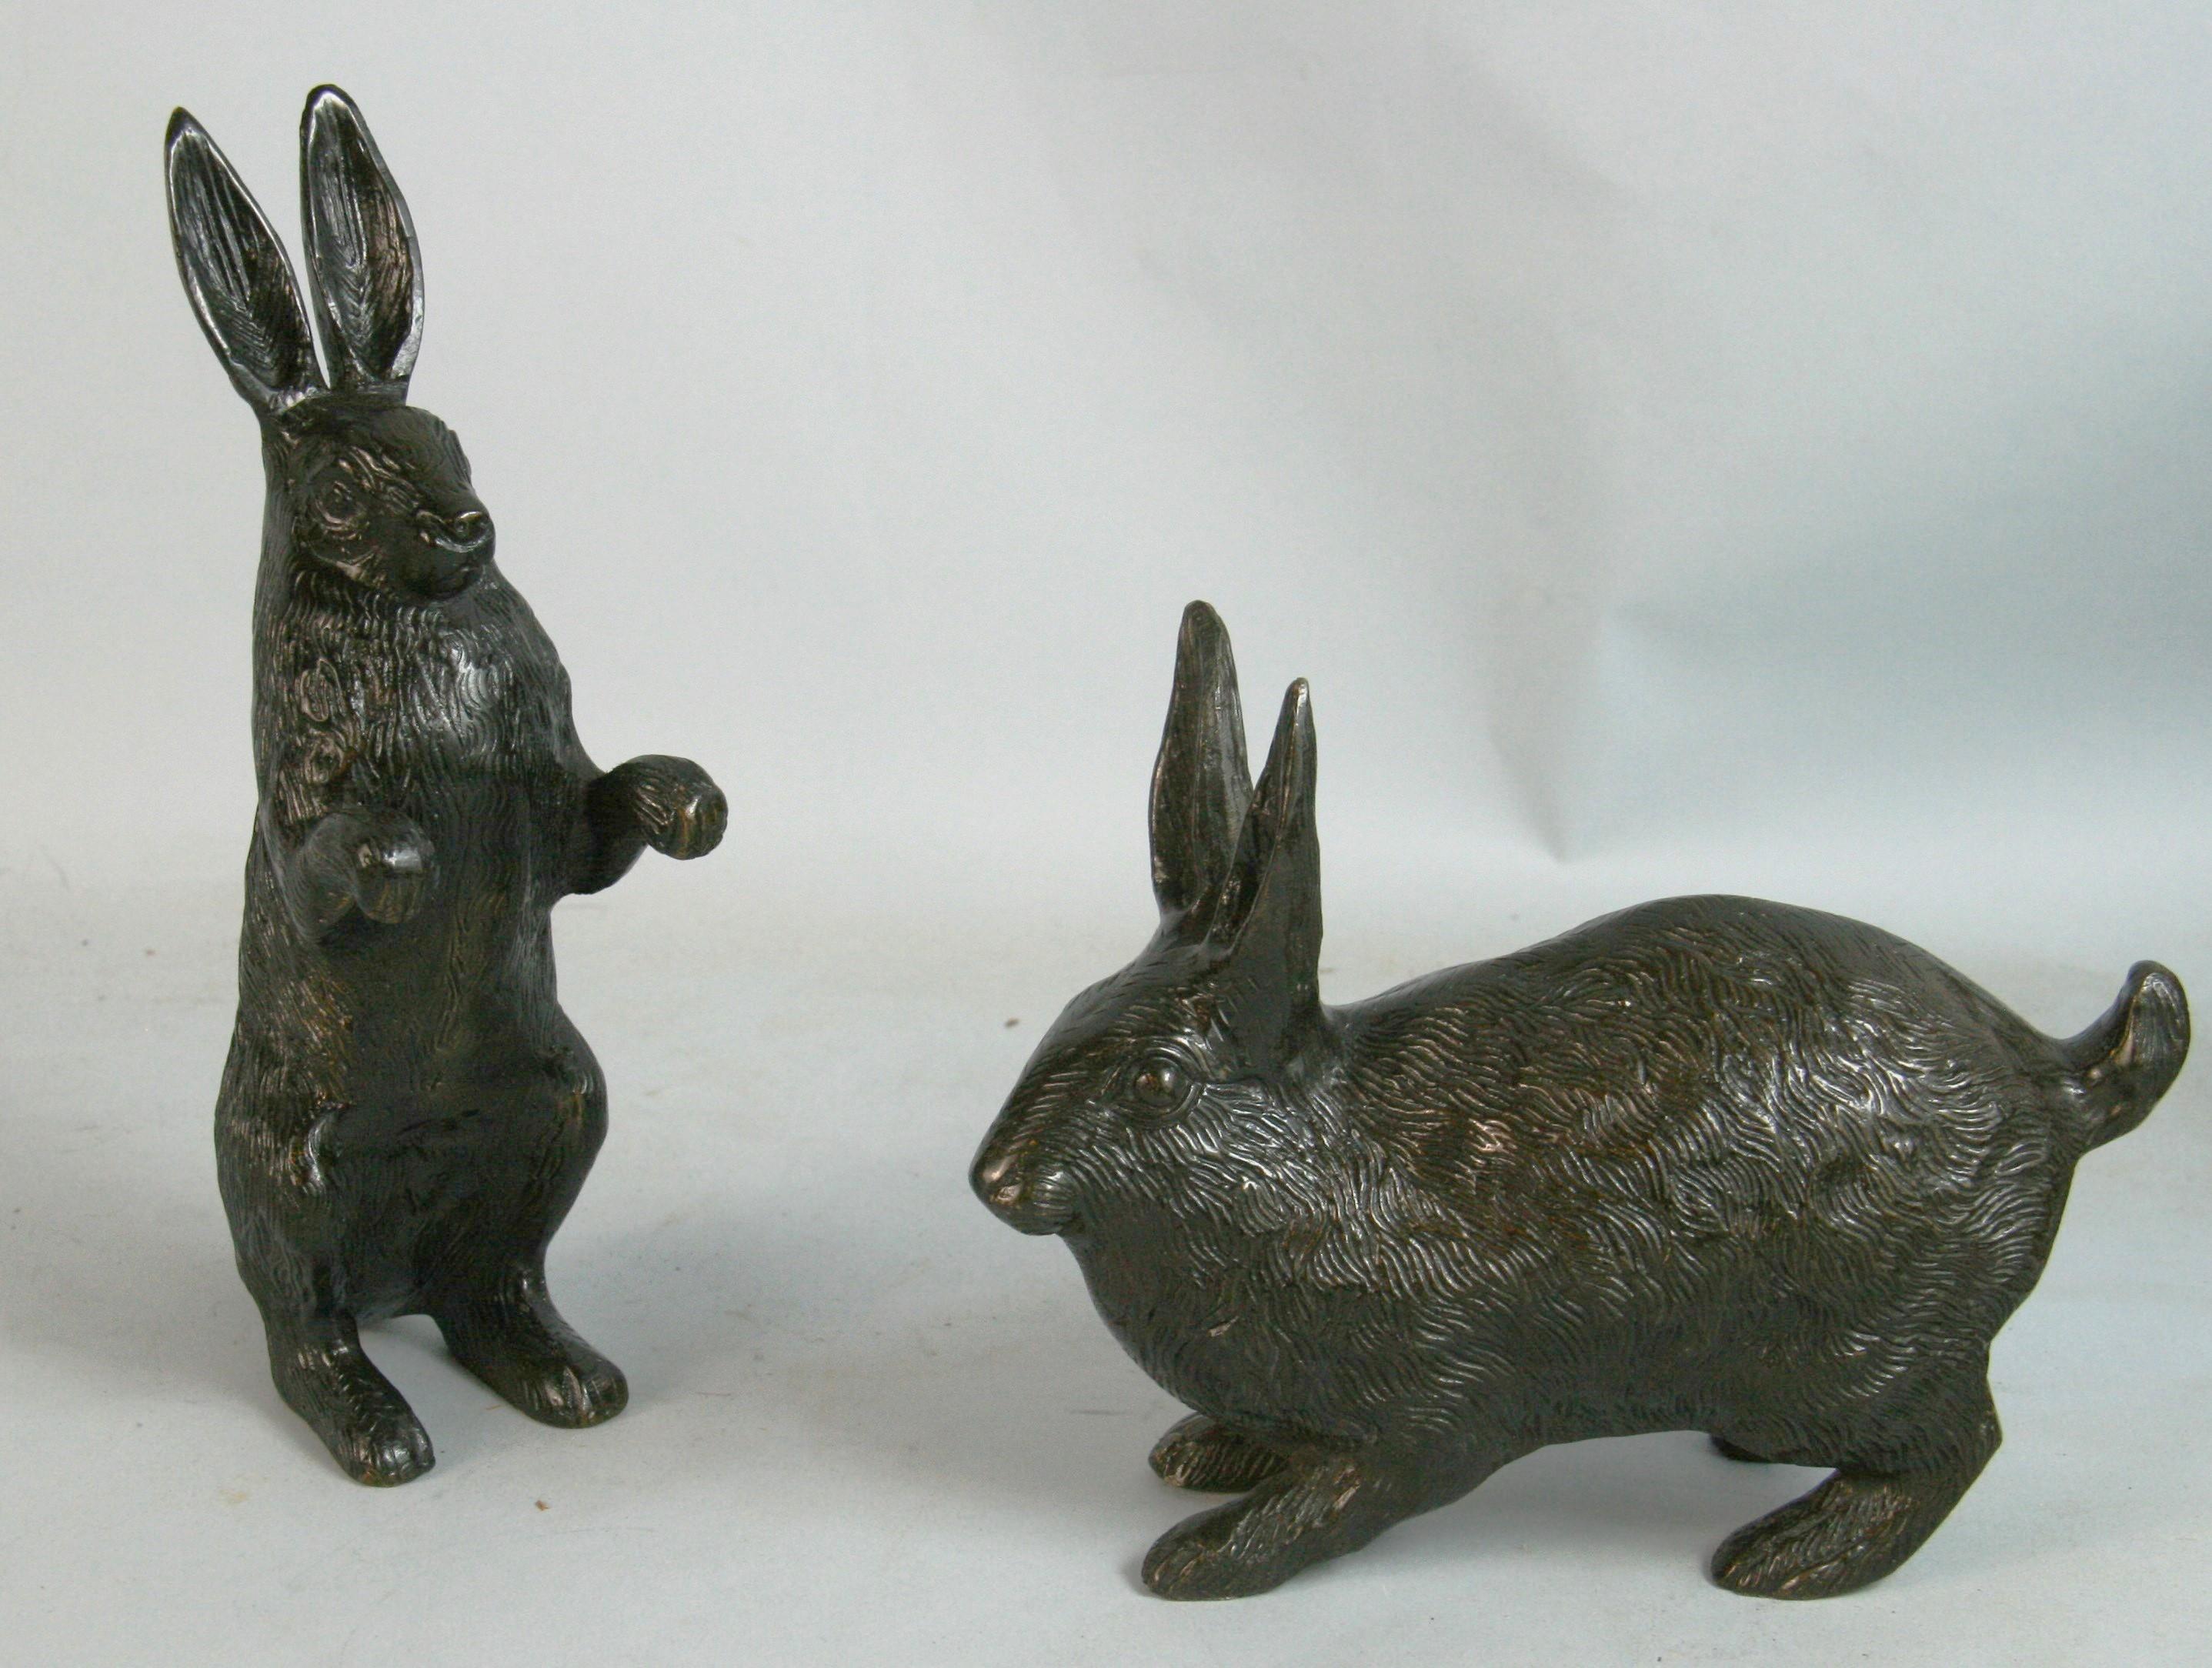 1577 Paire de lapins de jardin en bronze coulé à la main, l'un debout et l'autre accroupi
Ses lignes de poils finement détaillées et sa patine d'origine chocolat noir en font une paire parfaitement assortie.
Mesures : Debout 8.5x2.5x4